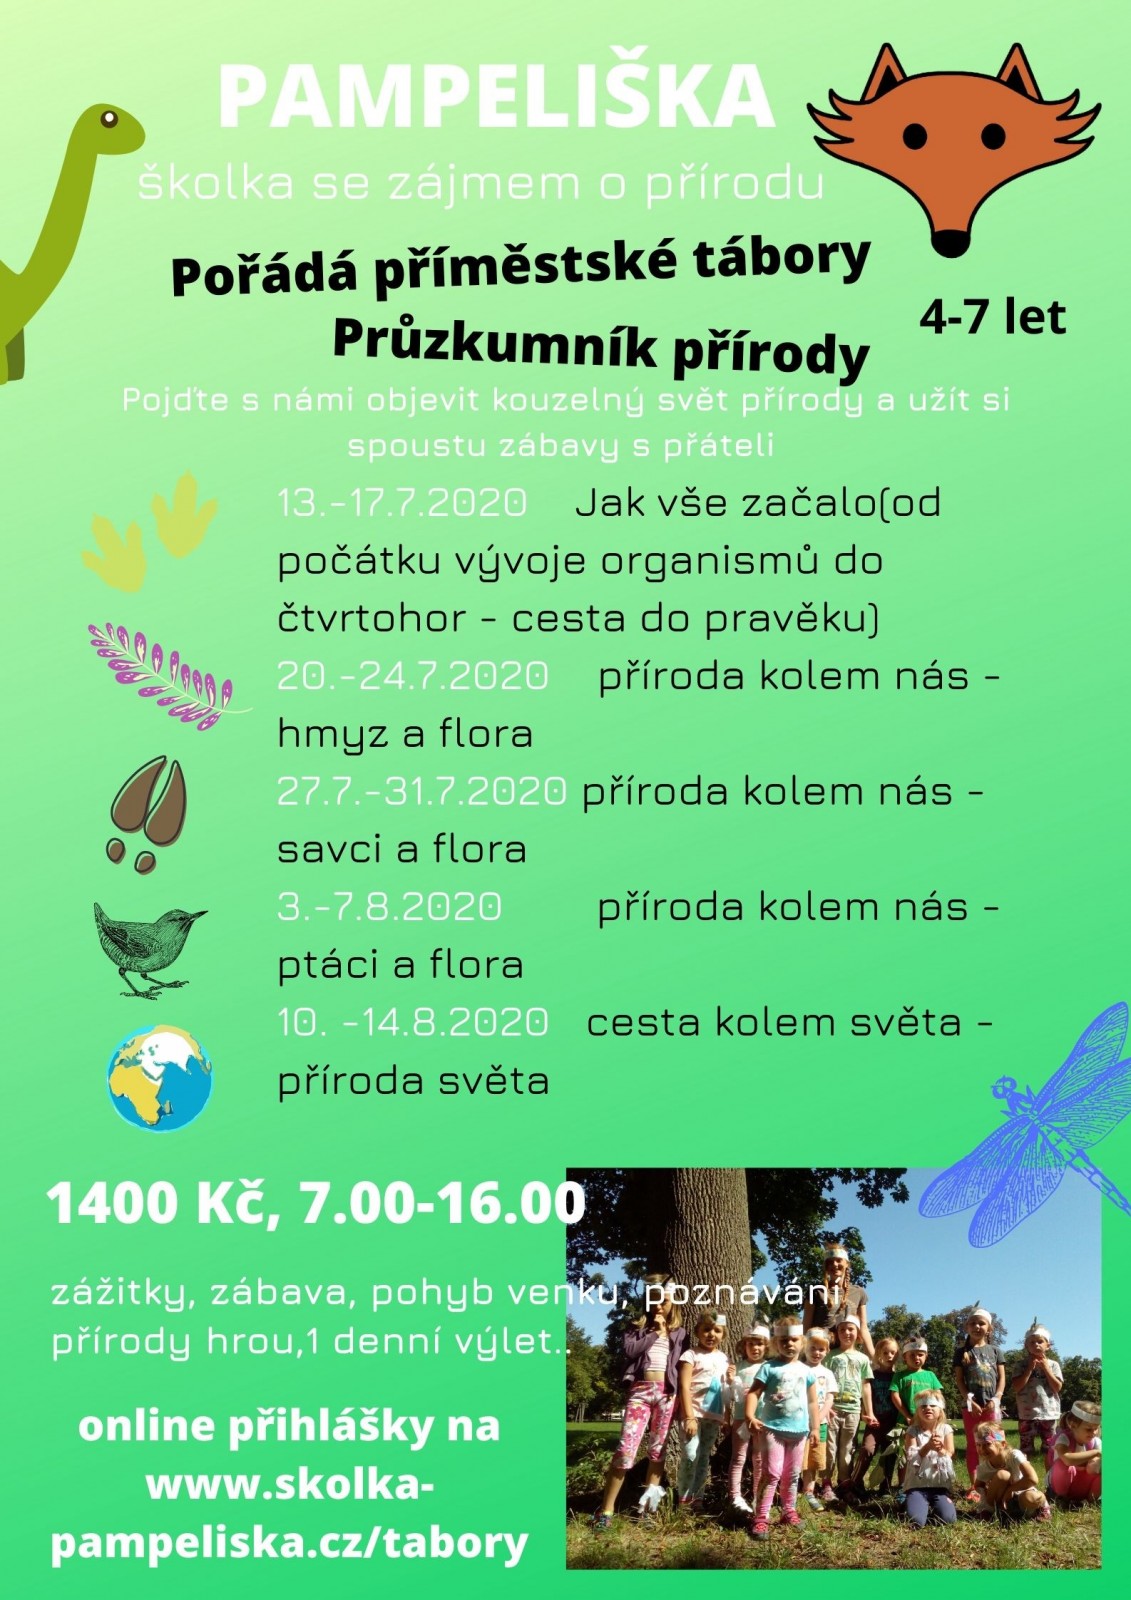 příměstský tábor ve Slavkově u Brna - průzkumník přírody od 3.8.-14.8.2020